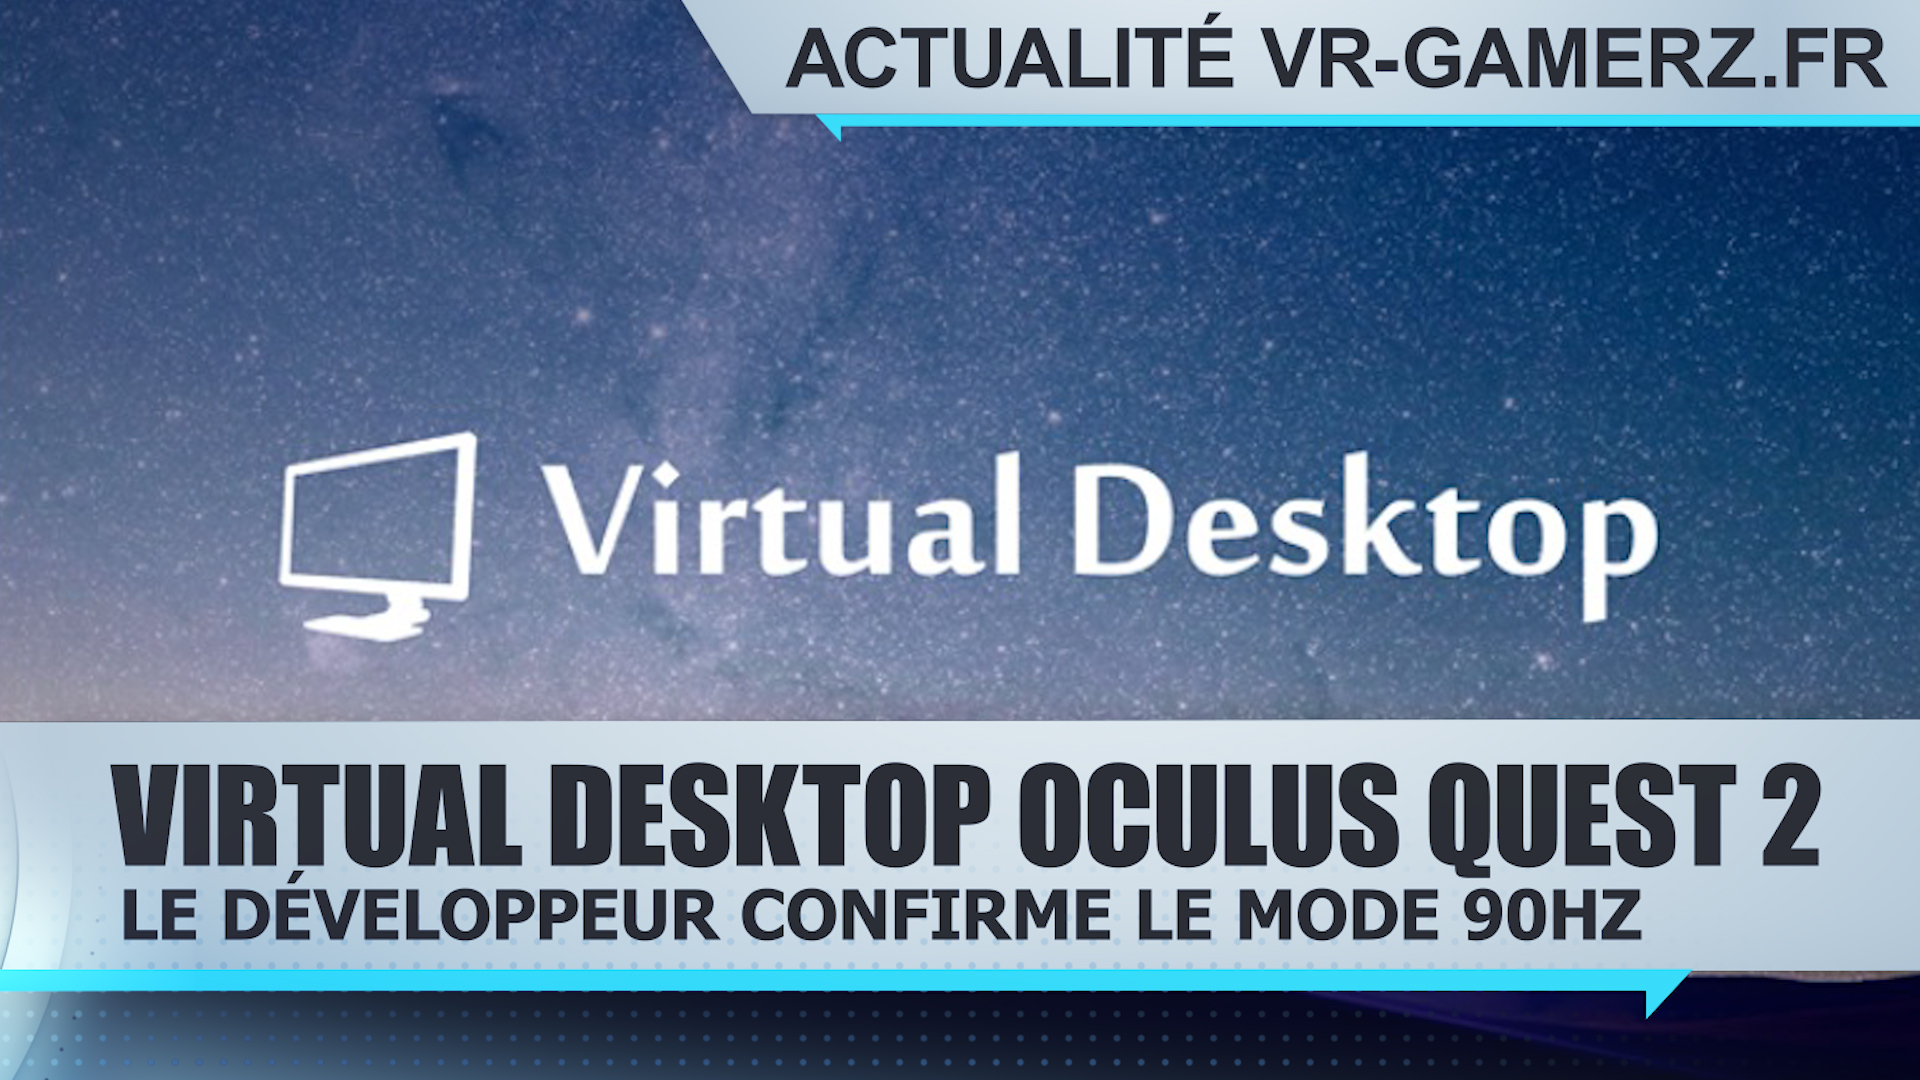 Virtual desktop supportera le mode 90Hz sur Oculus quest 2 !